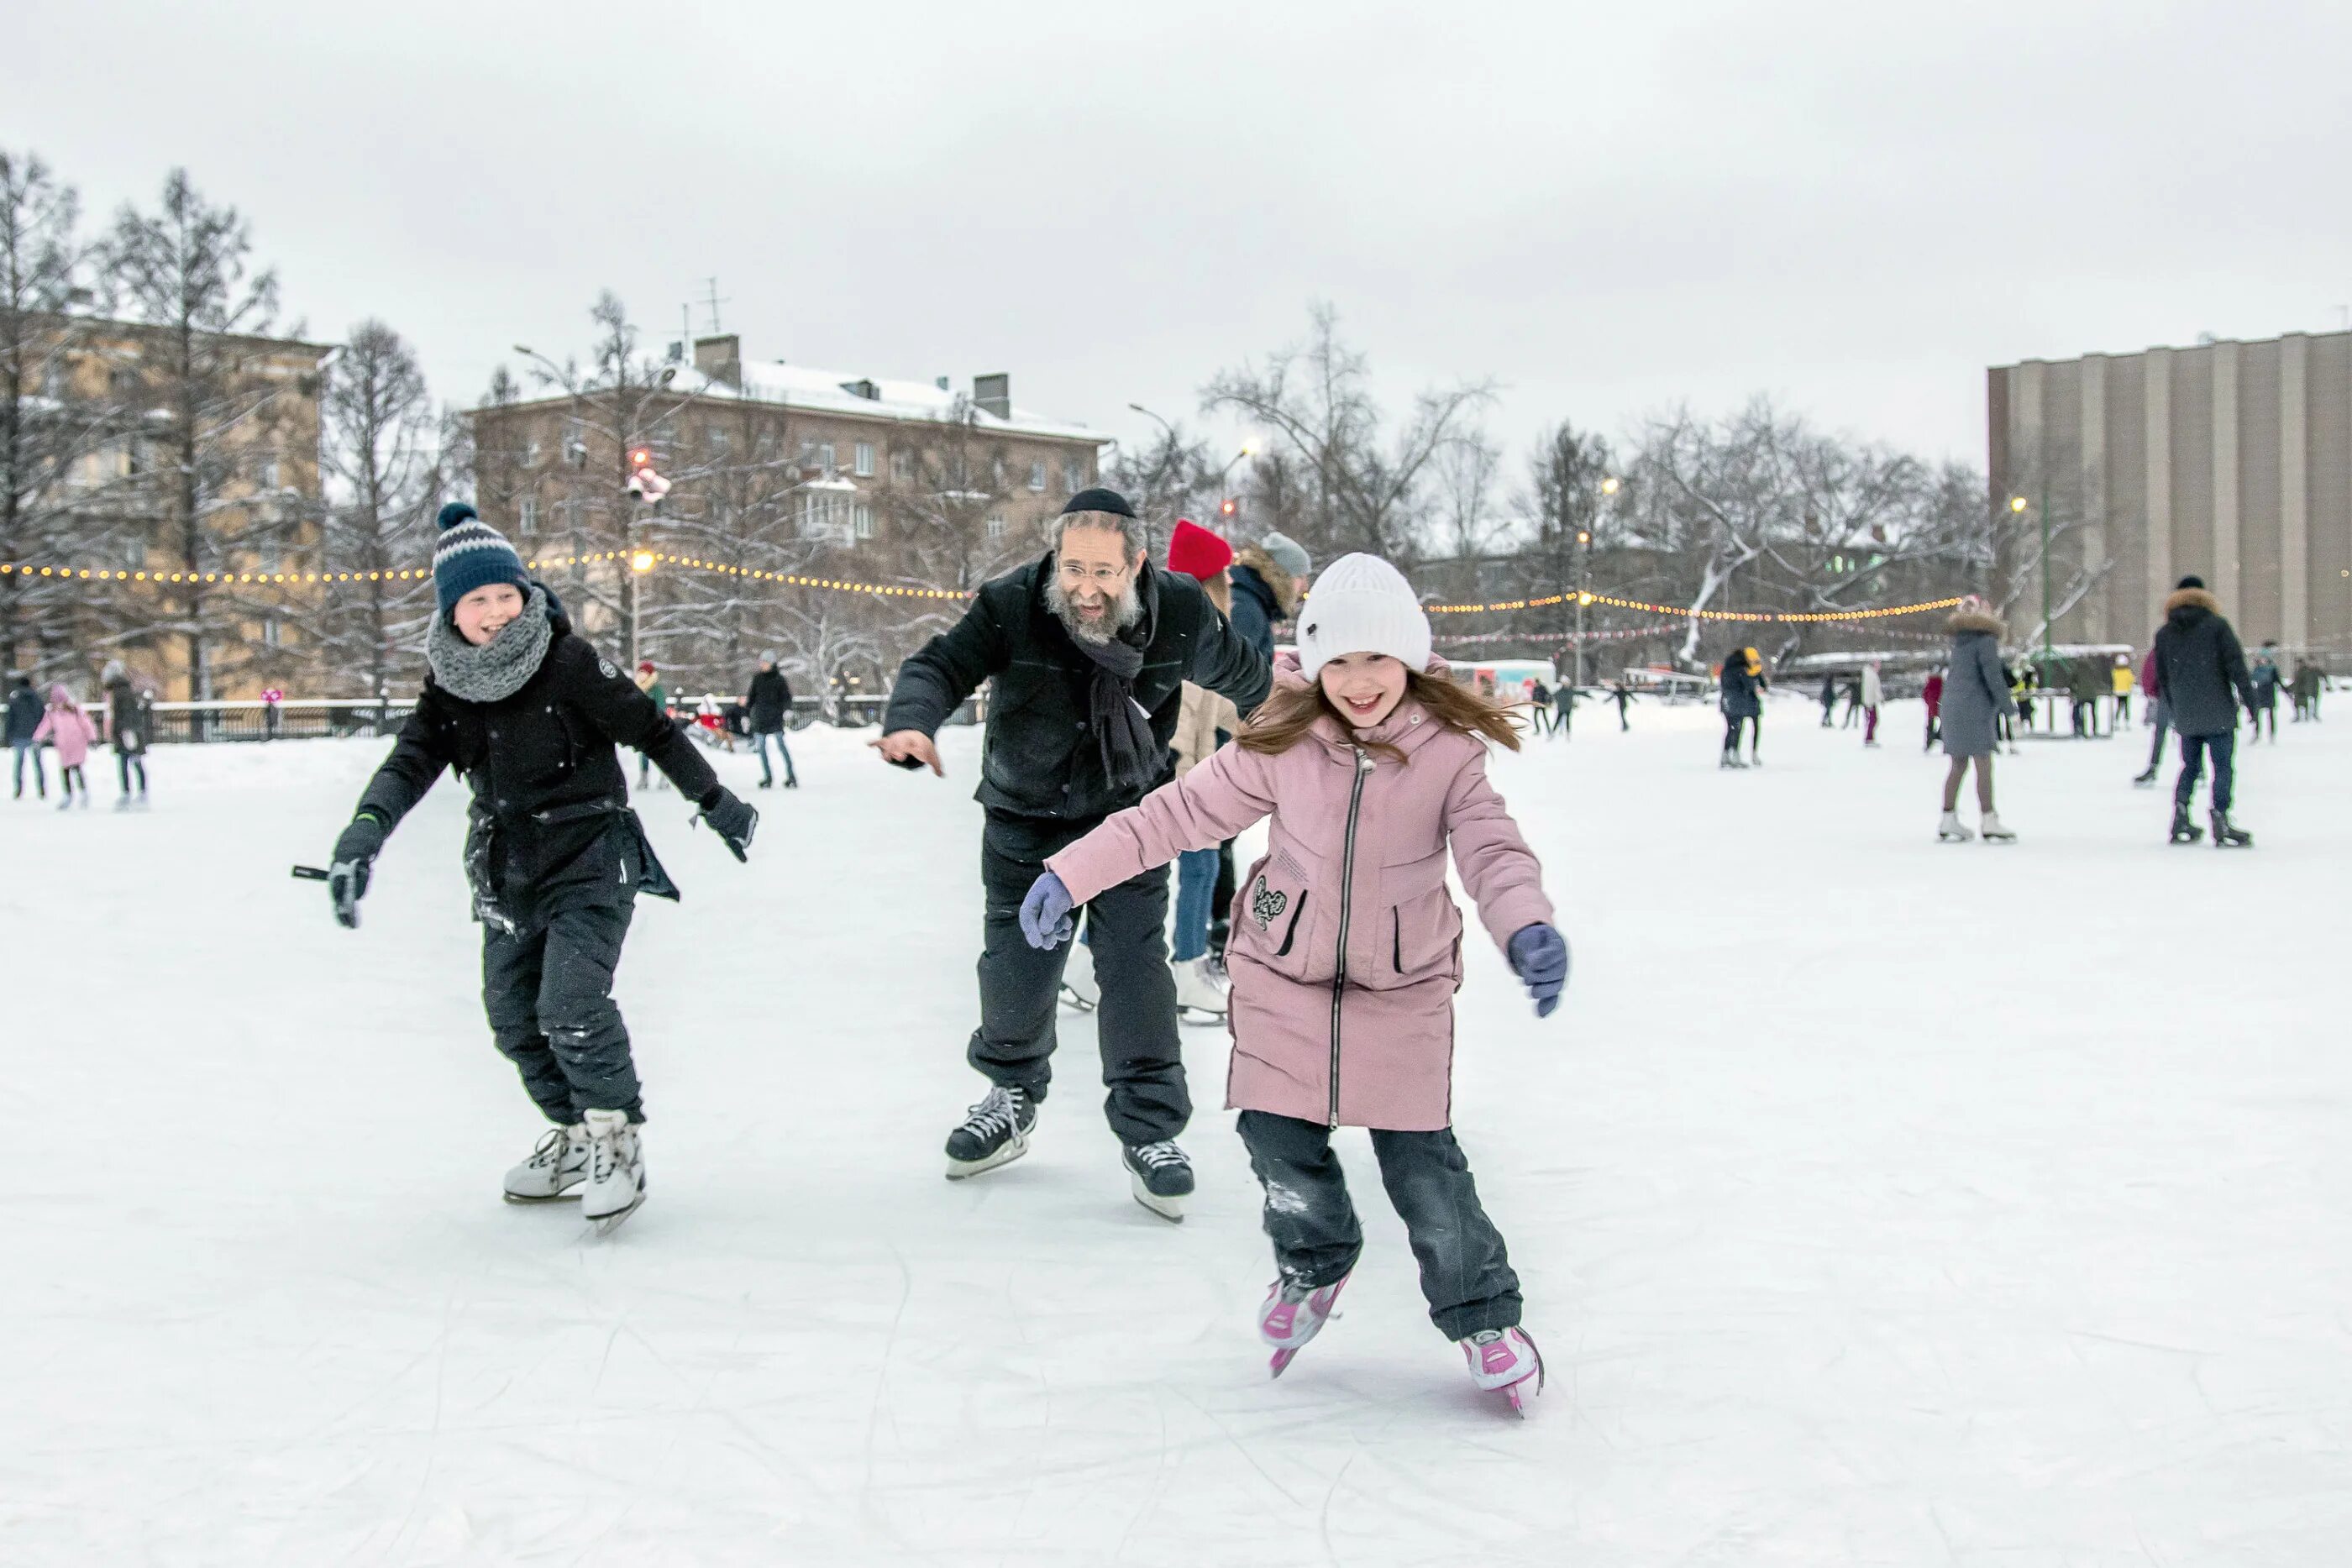 Снежком катание. Катание на коньках. Дети катаются на коньках. Кататься на коньках зимой. Катание на коньках дети.